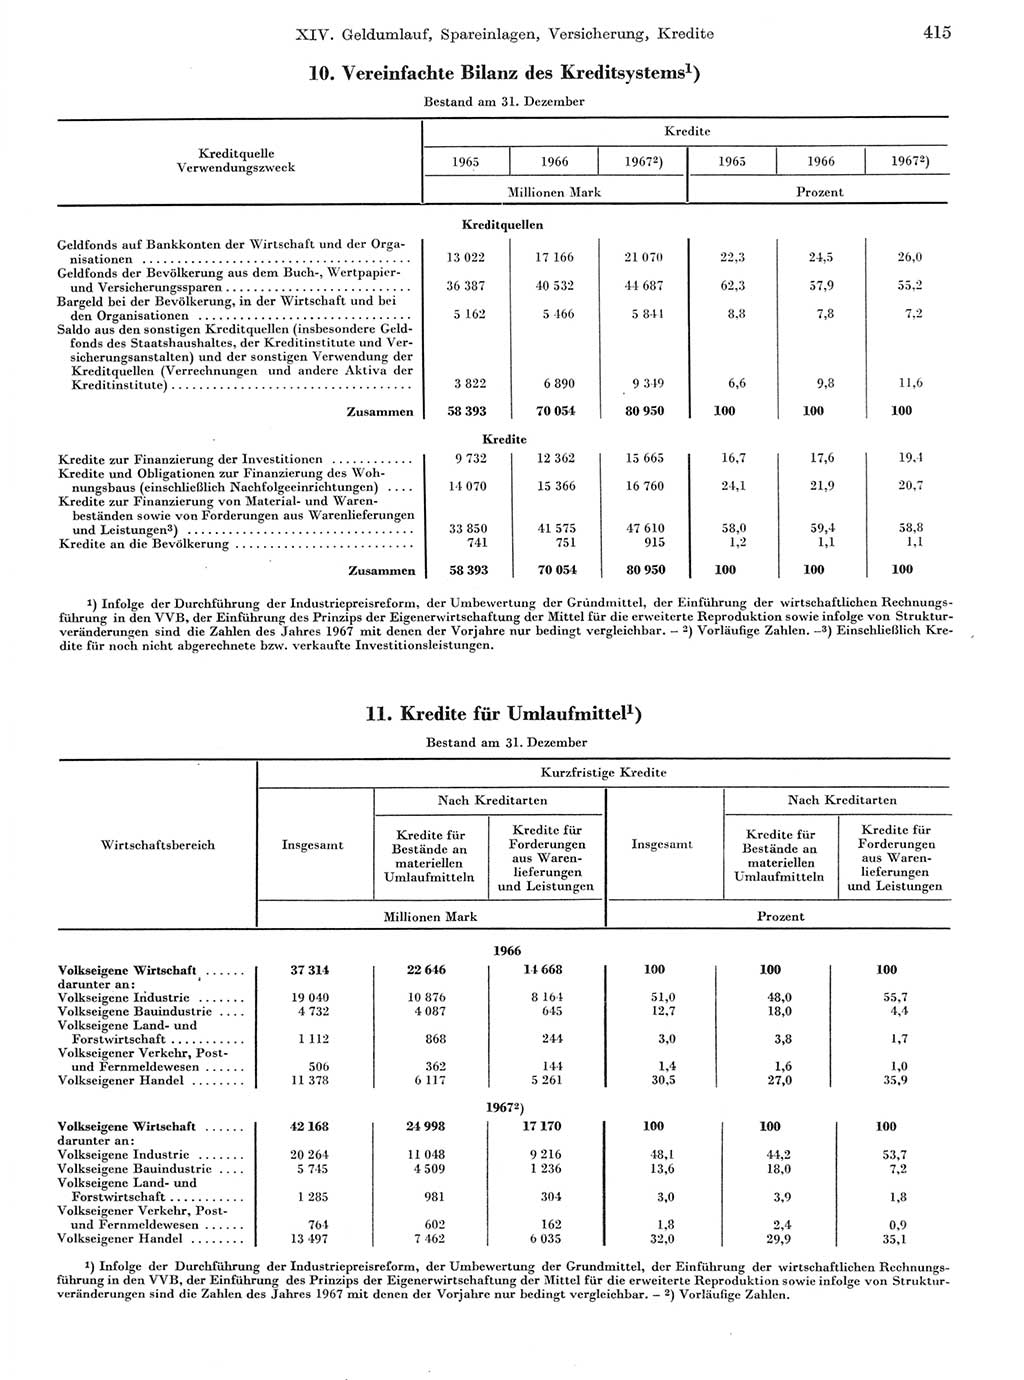 Statistisches Jahrbuch der Deutschen Demokratischen Republik (DDR) 1968, Seite 415 (Stat. Jb. DDR 1968, S. 415)